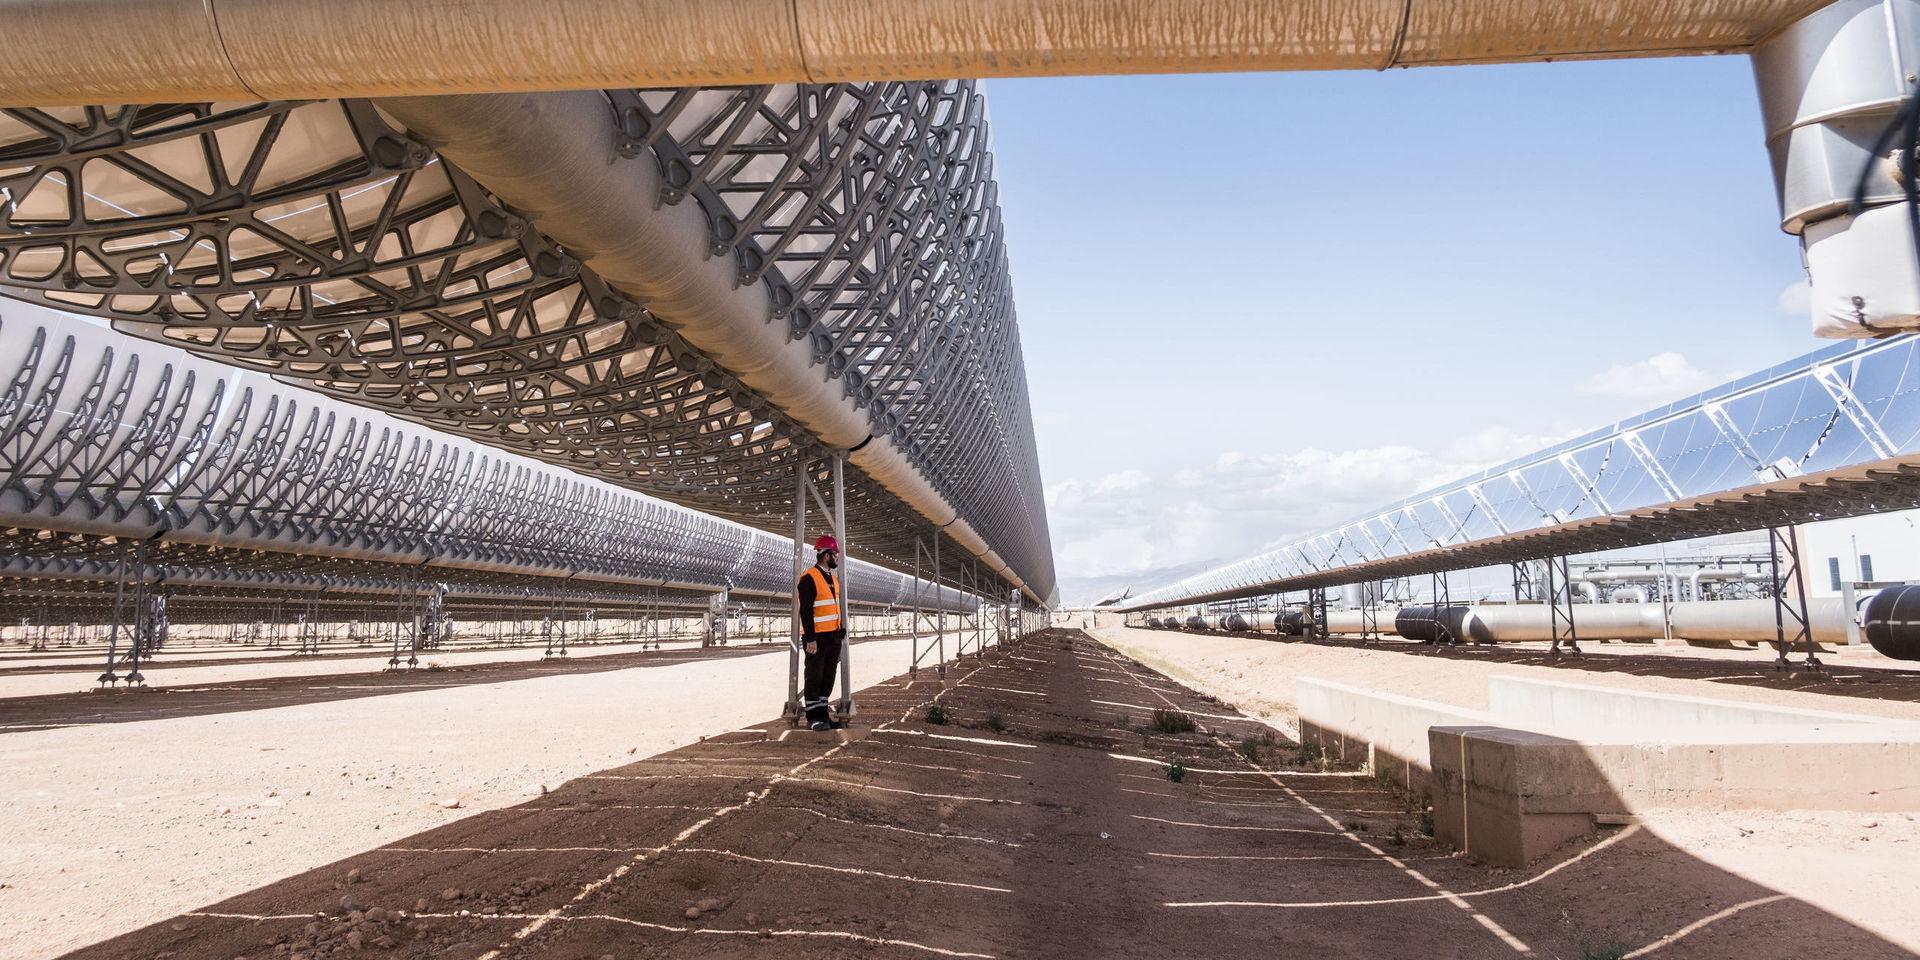 Noor Ourzazate i Marocko. som är världens största solkraftverk.